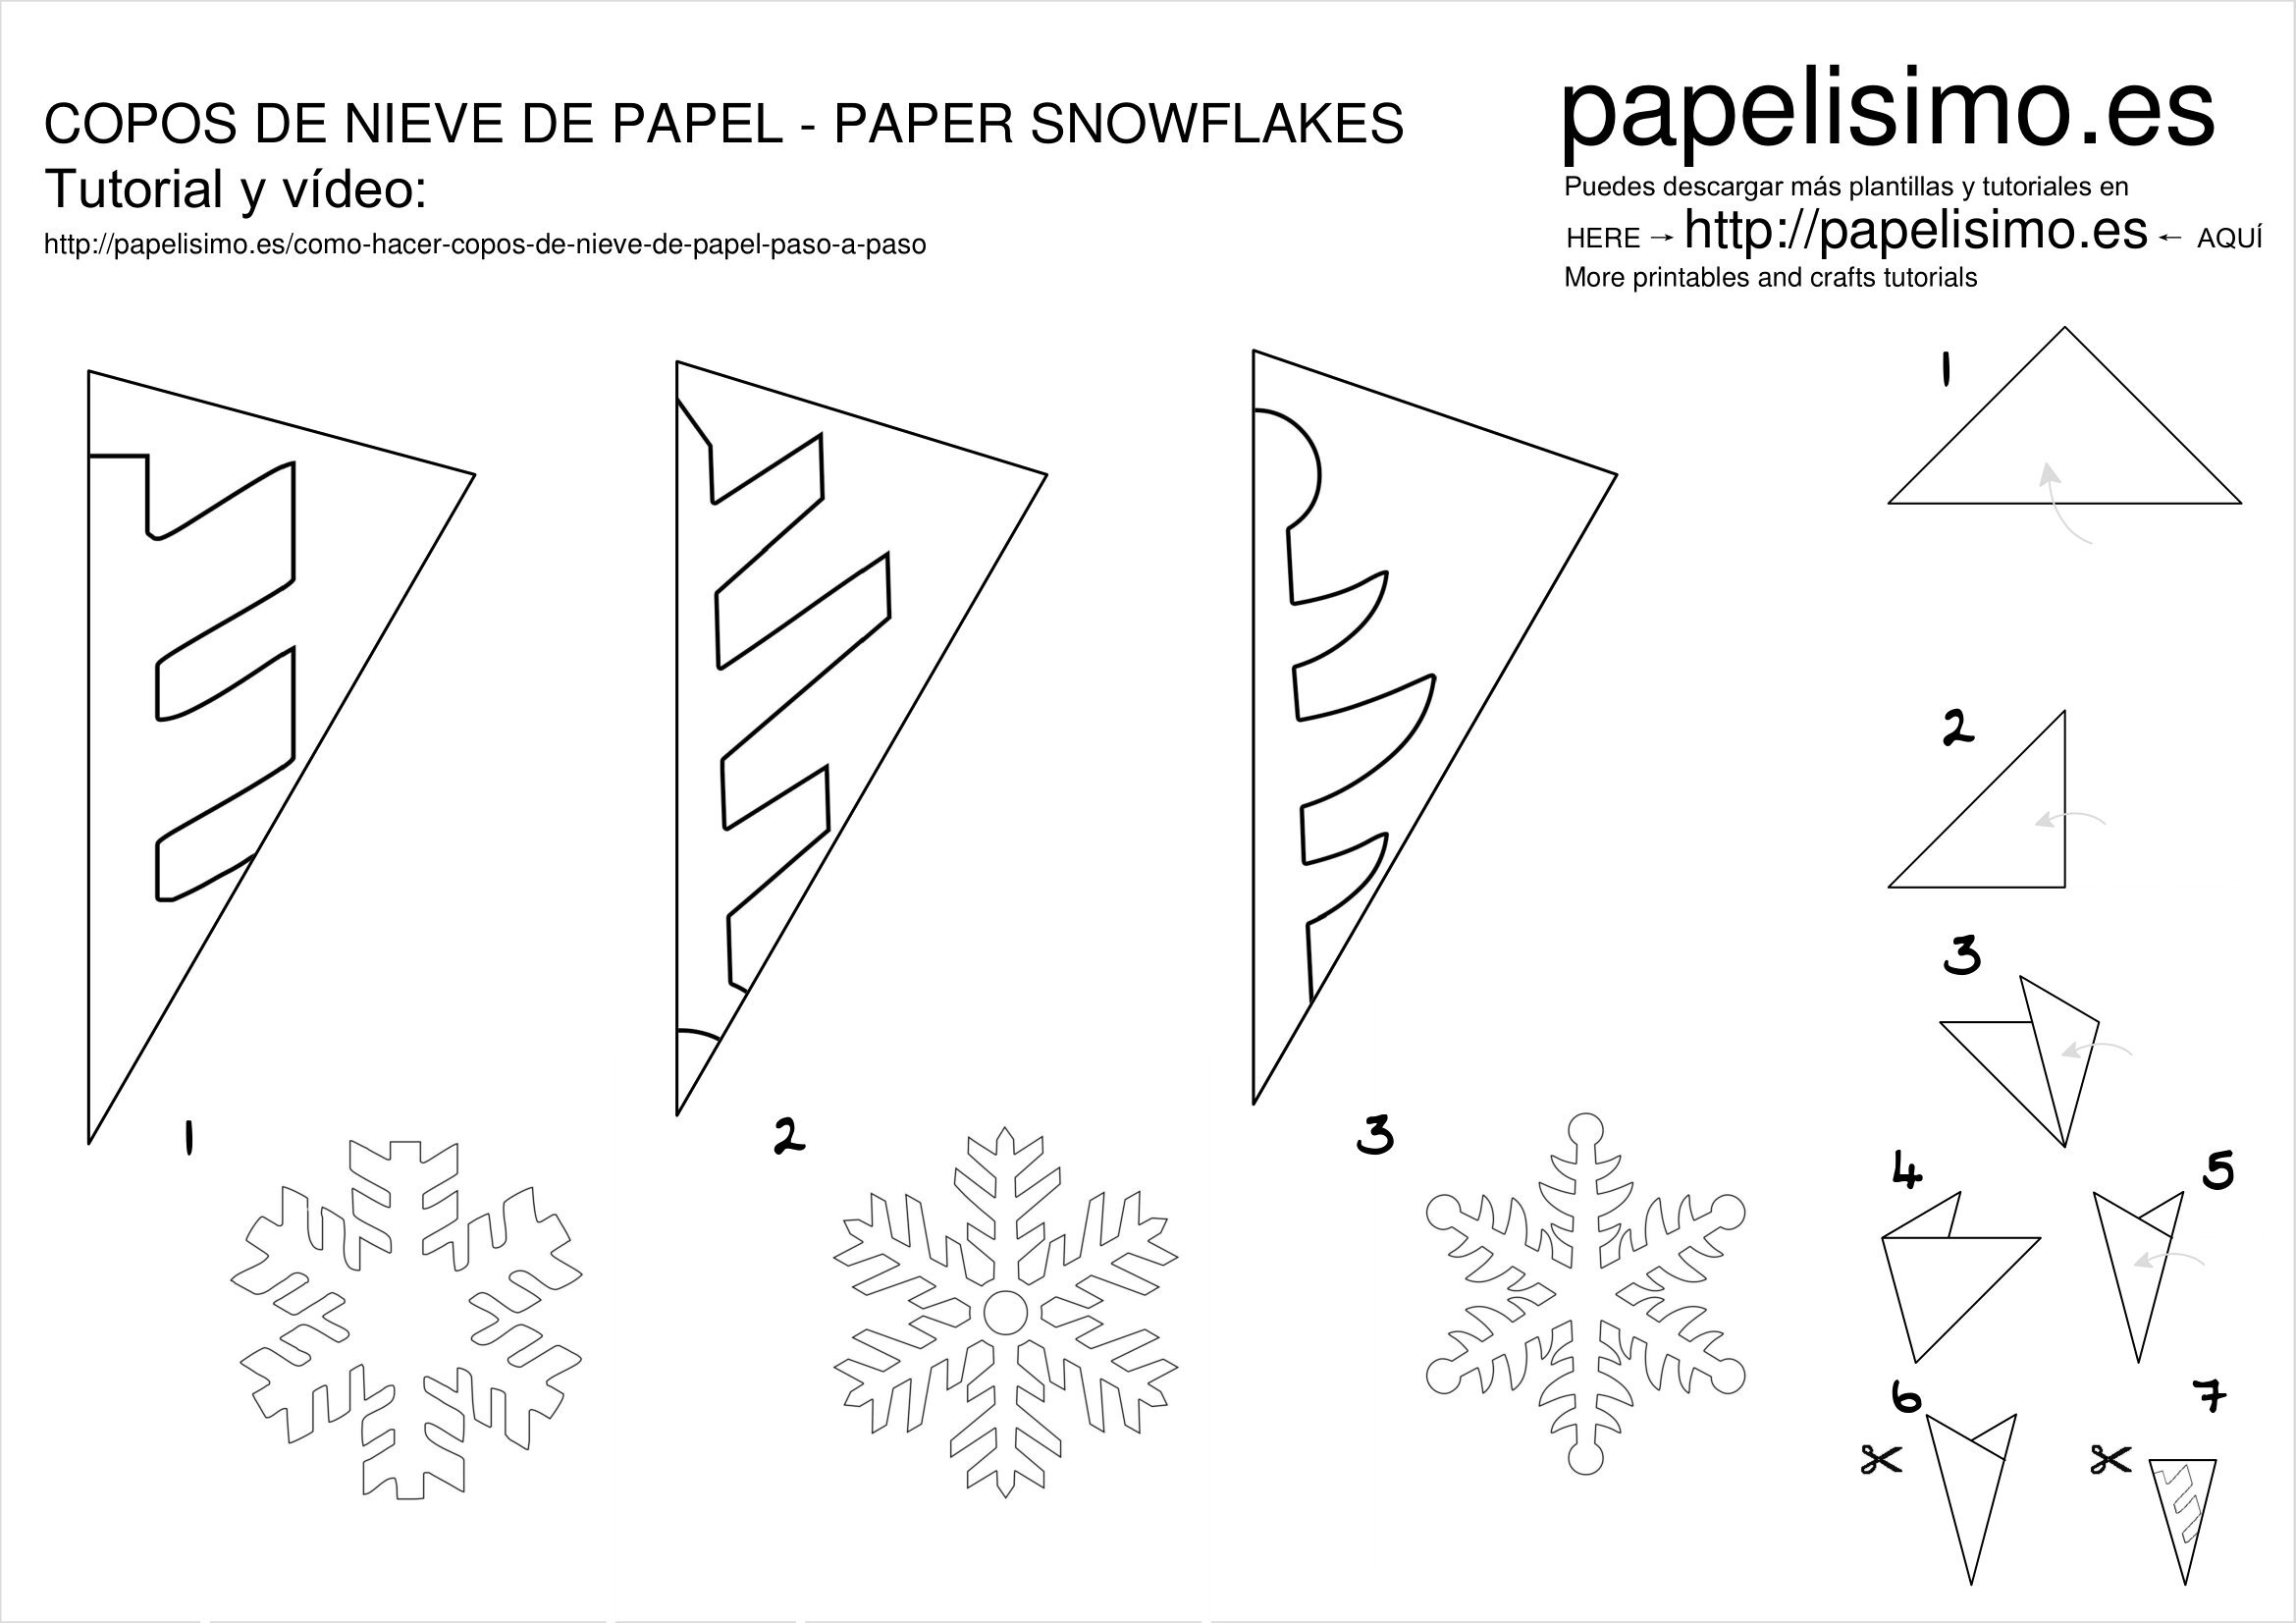 Как сделать снежинки из бумаги своими руками на Новый год?